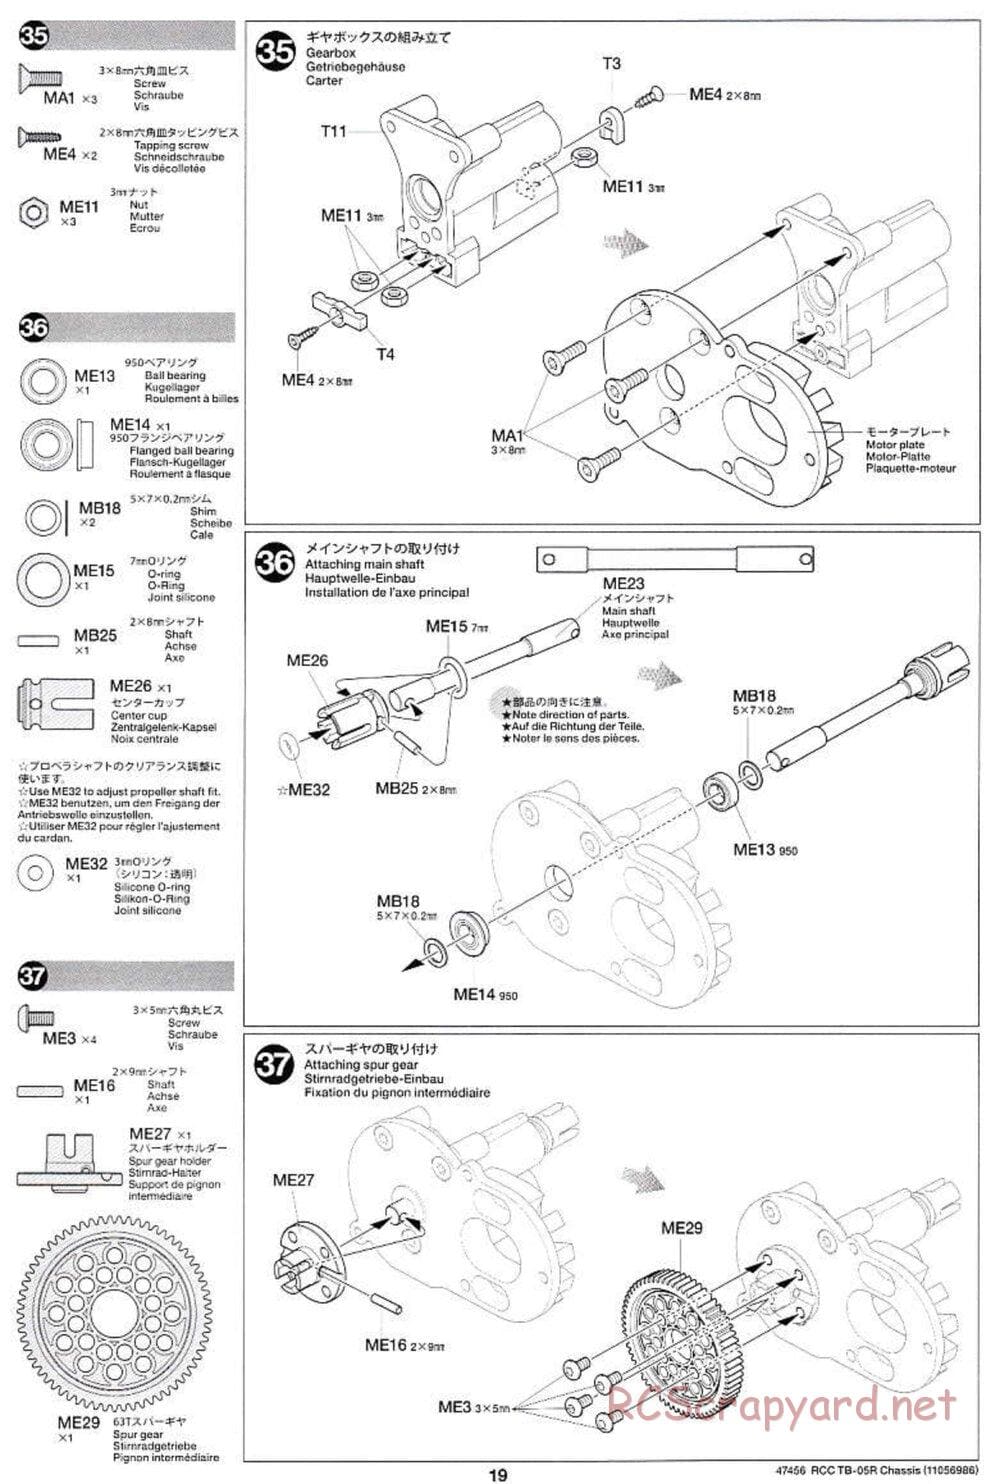 Tamiya - TB-05R Chassis - Manual - Page 19